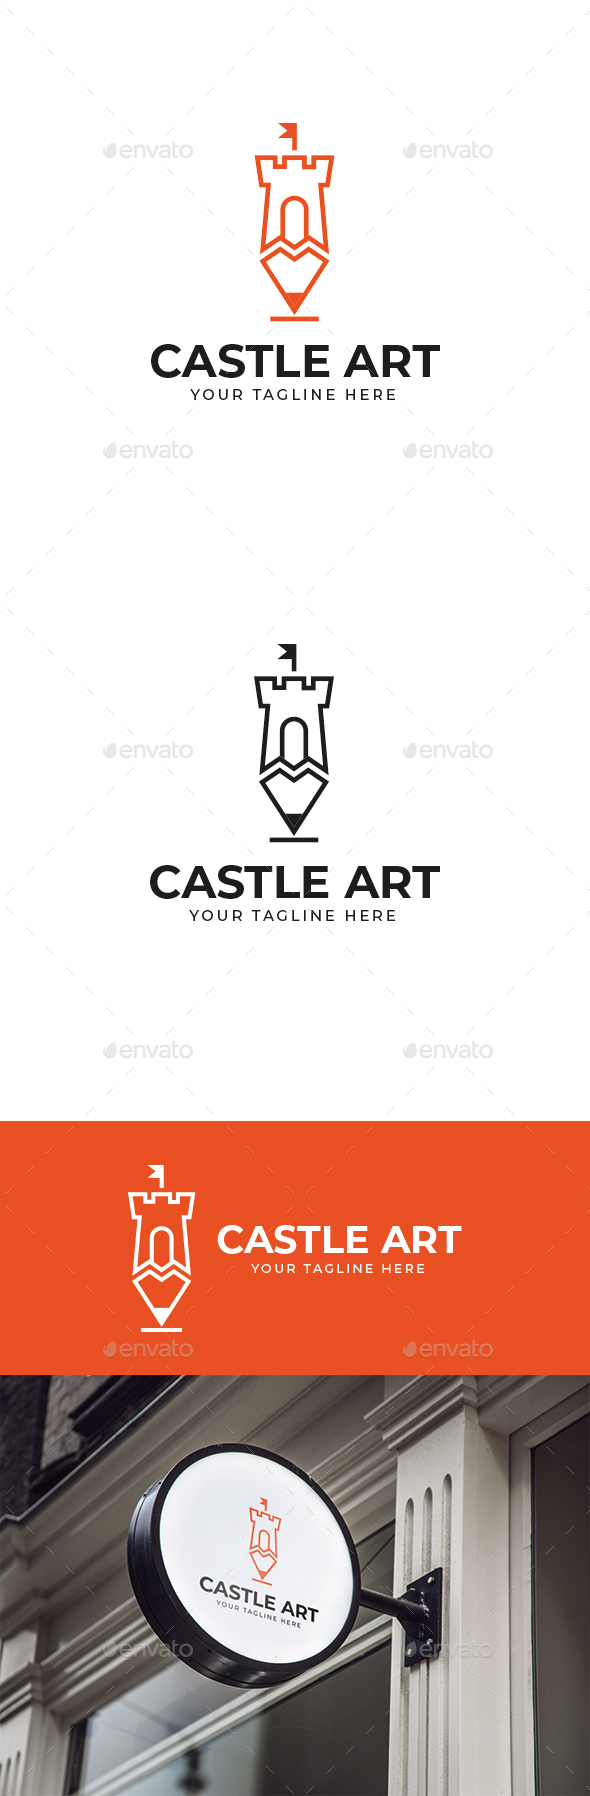 [DOWNLOAD]Castle Art Logo Design